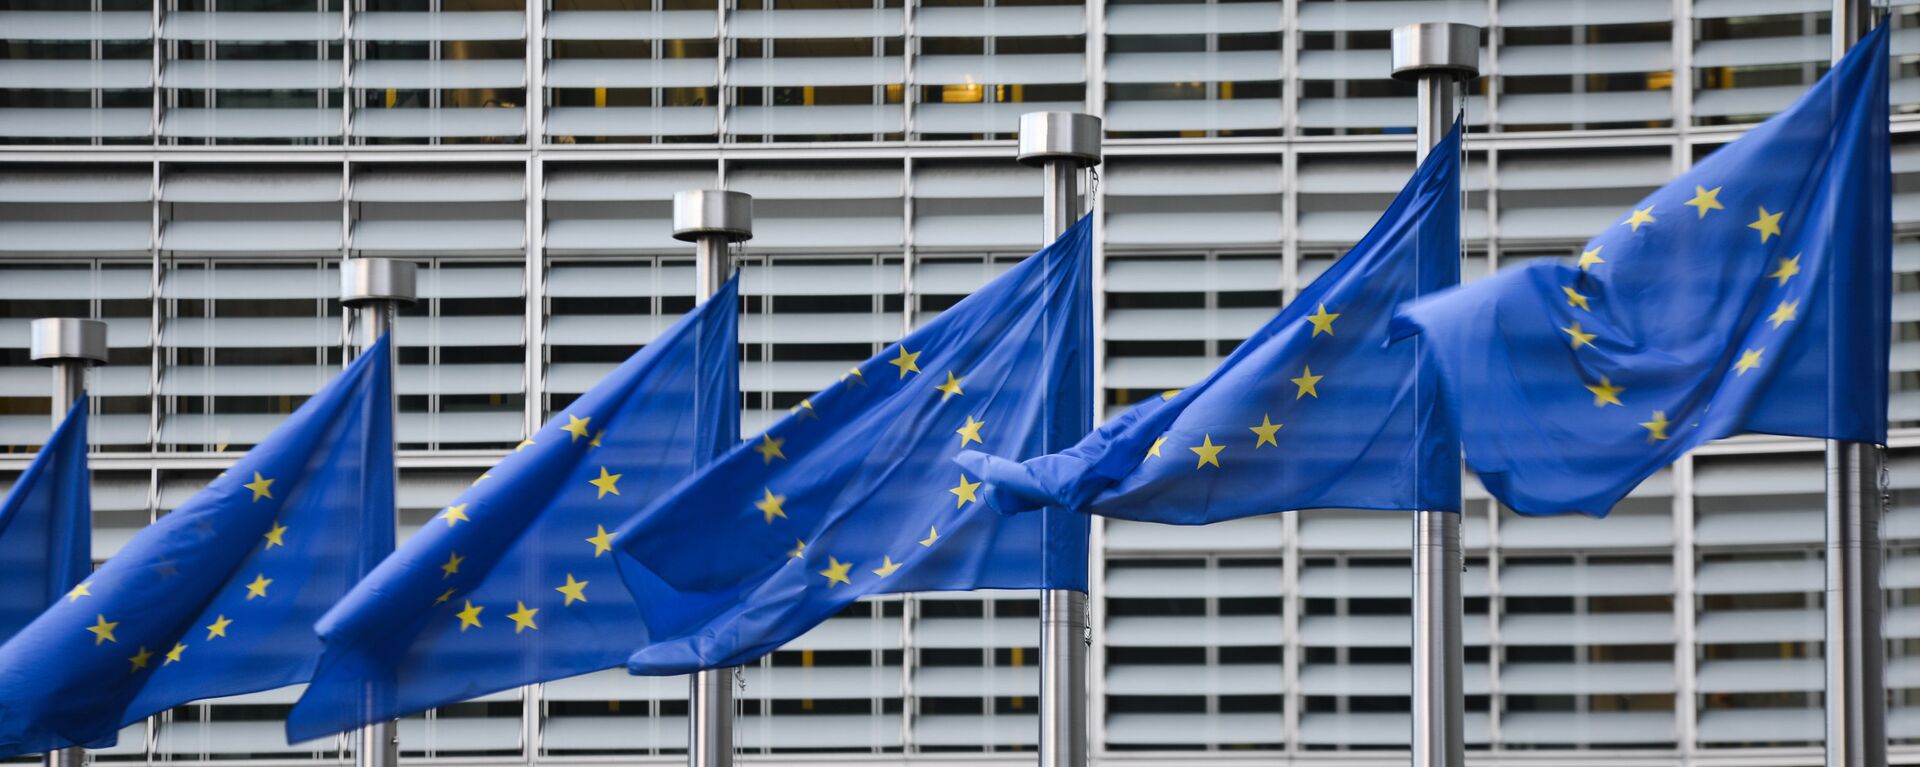 Флаги Евросоюза у здания штаб-квартиры Европейской комиссии в Брюсселе - Sputnik Latvija, 1920, 02.03.2021